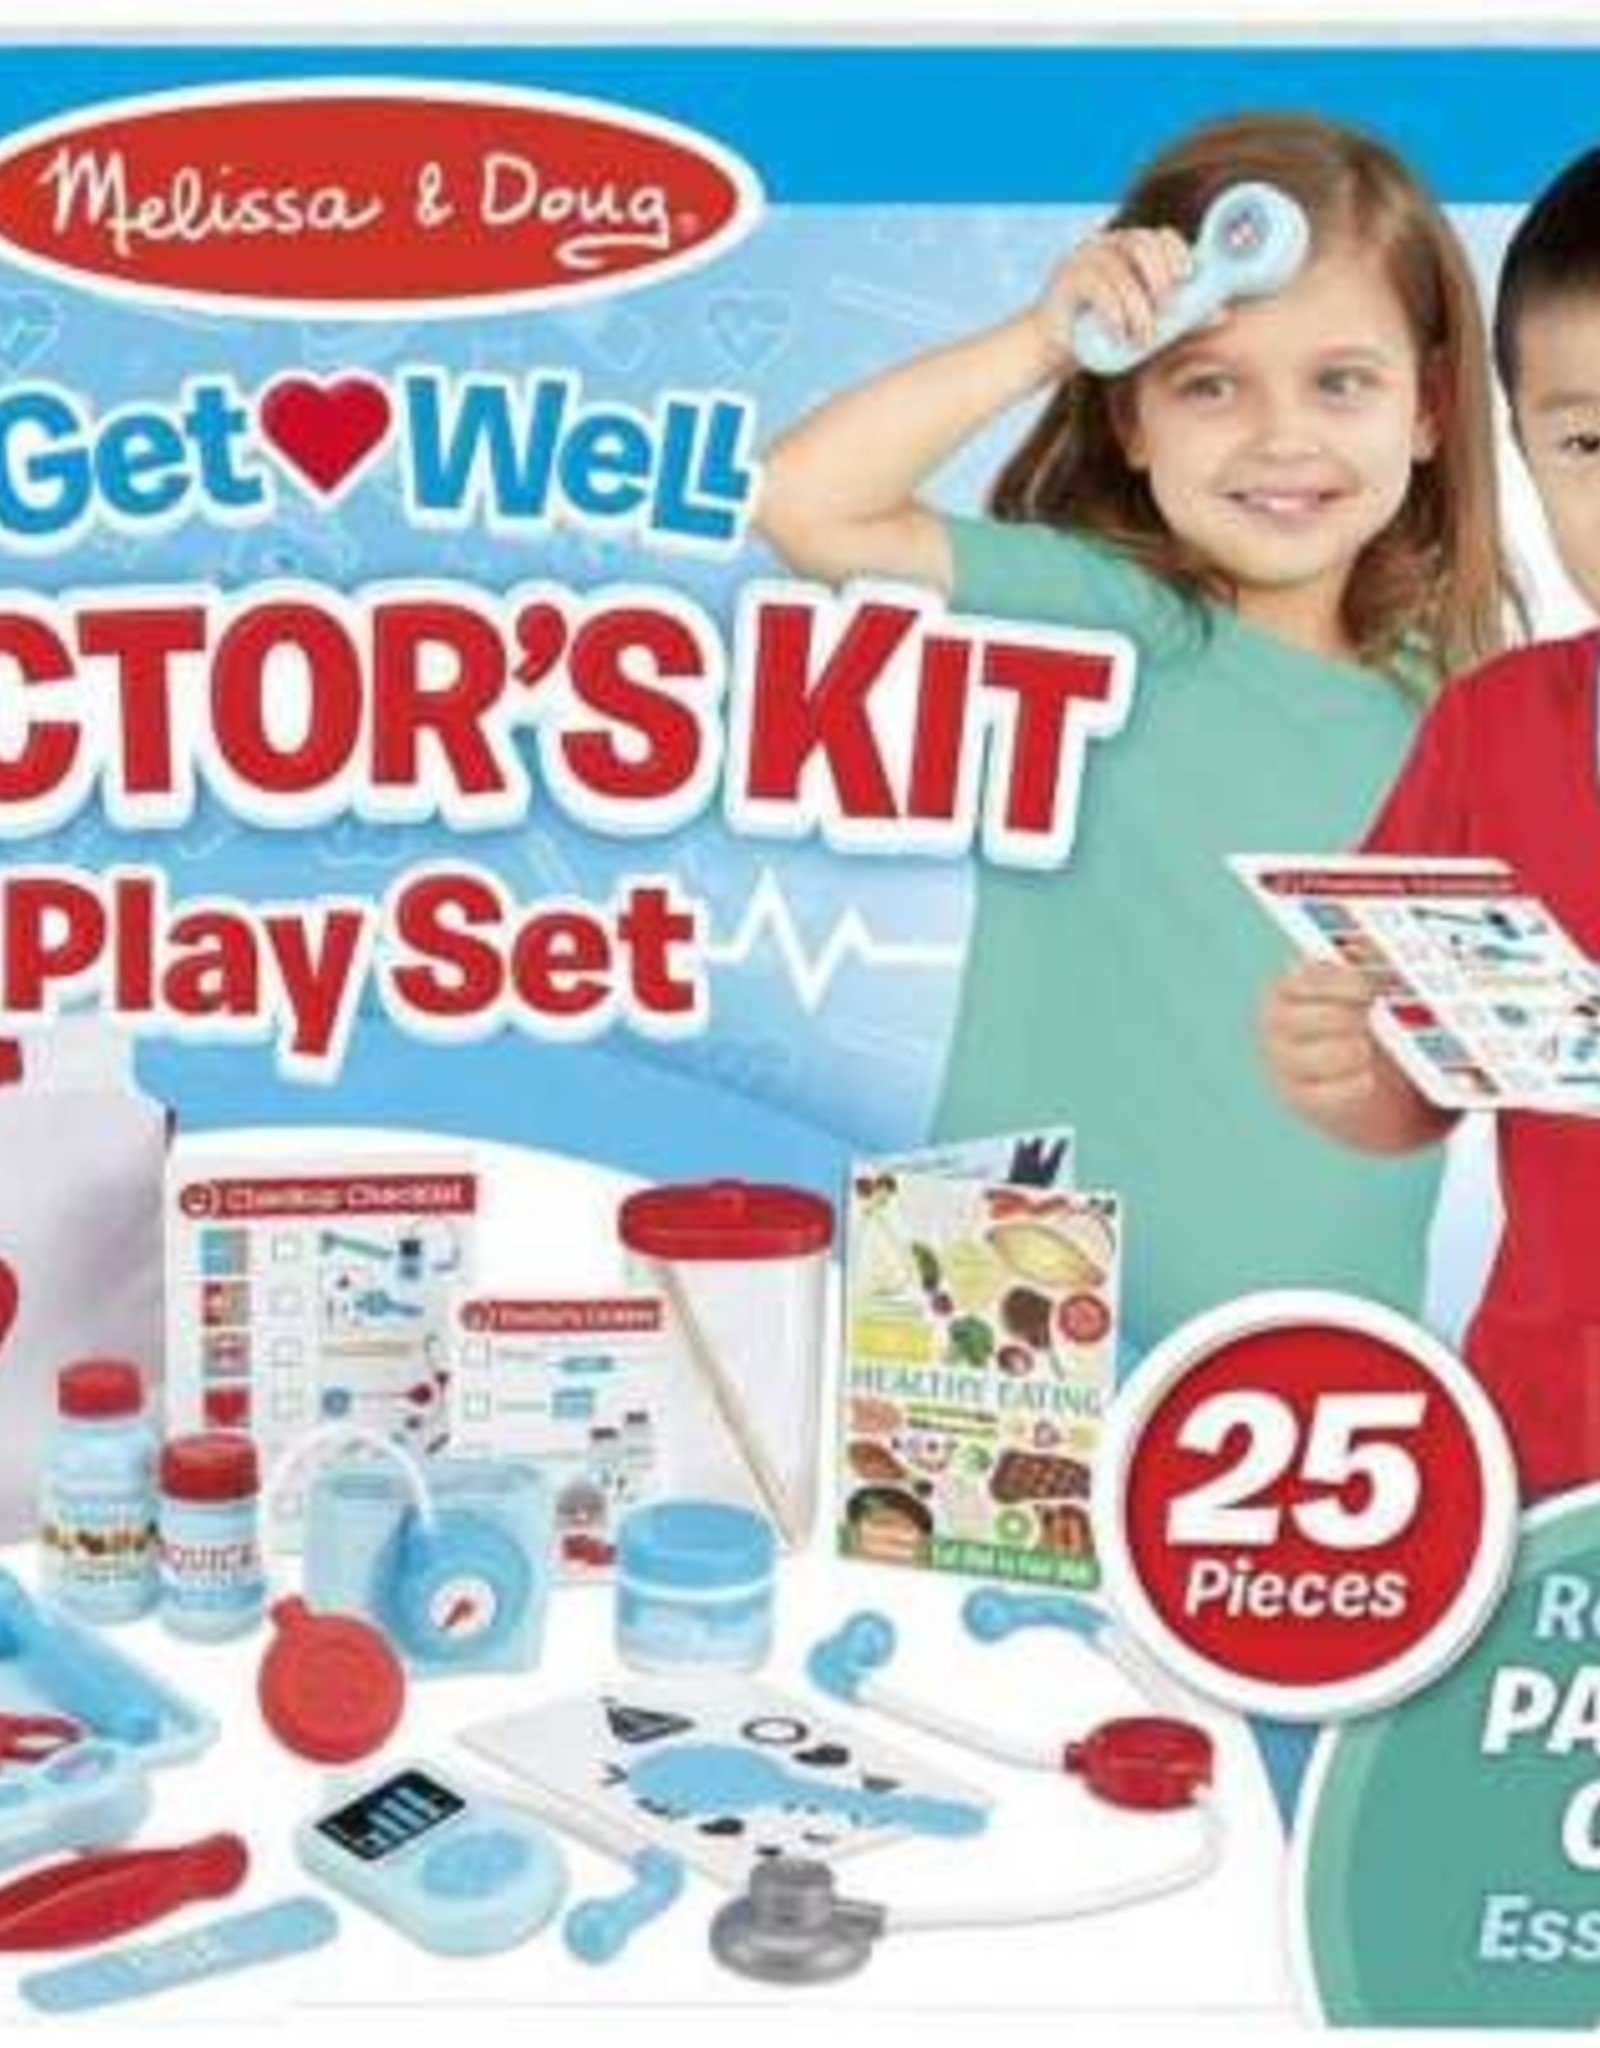 MELISSA & DOUG Get Well Doctor's Kit Play Set